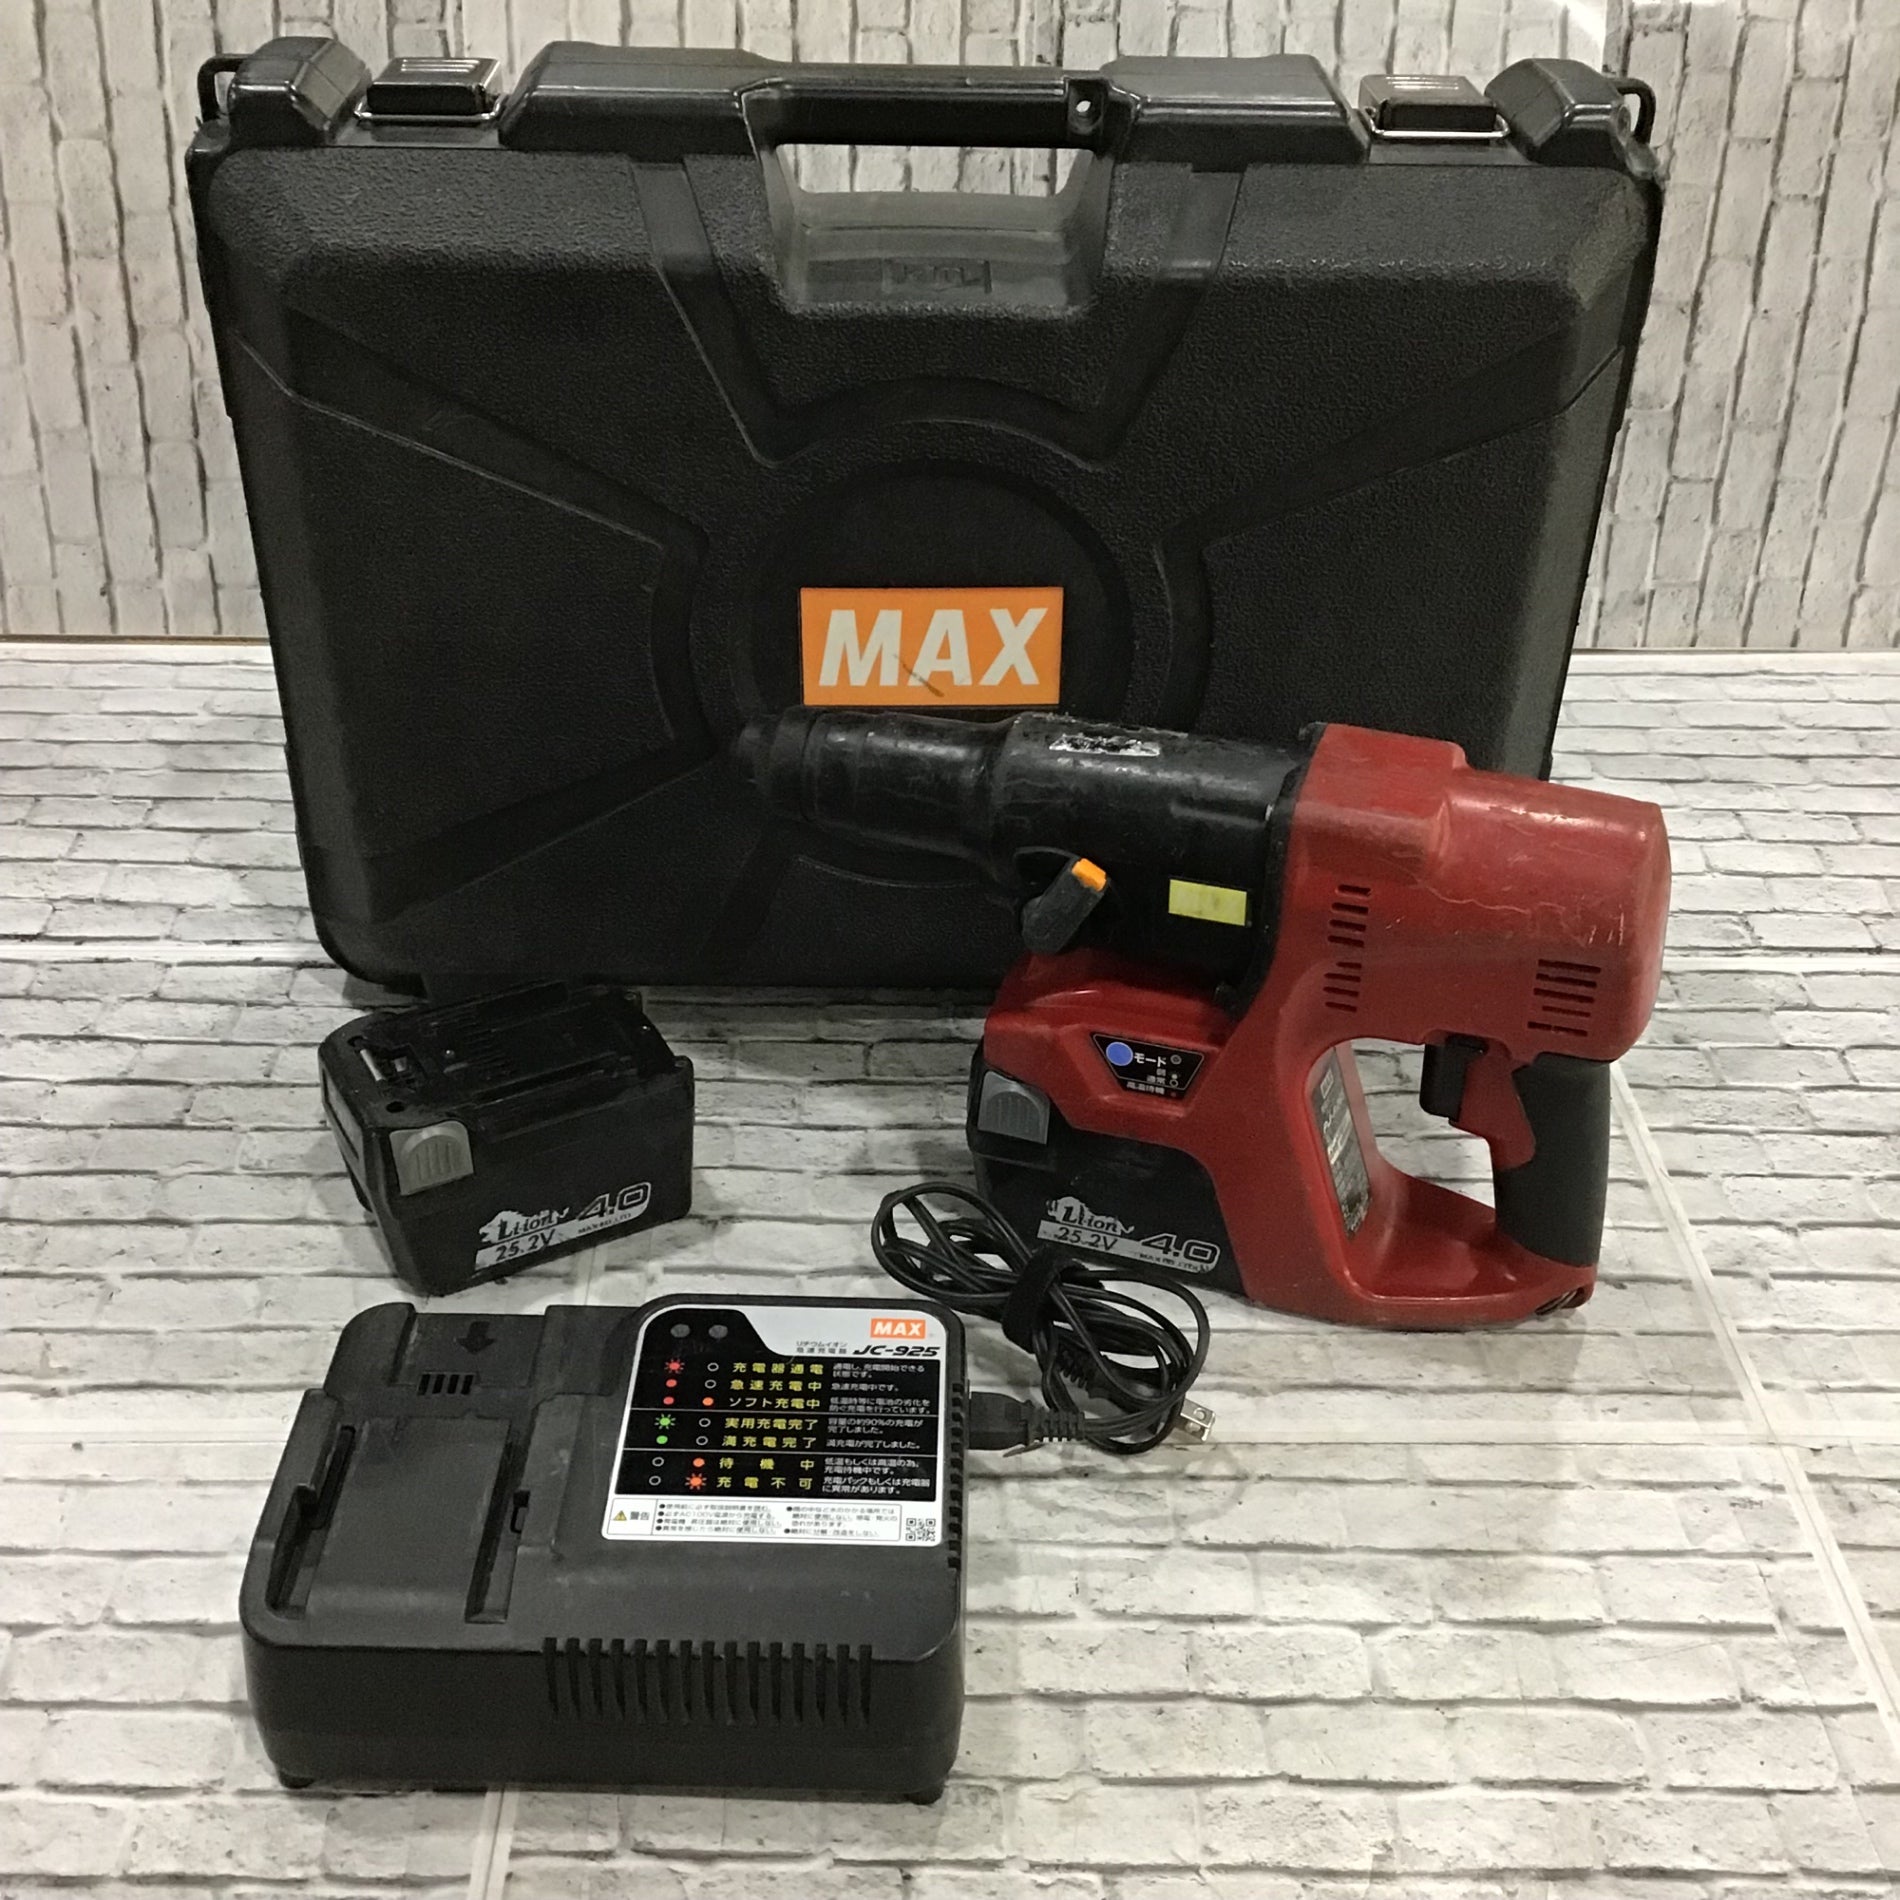 〇マックス(MAX) コードレスハンマドリル PJ-R265-B2C/40A 25.2V 4.0Ah 